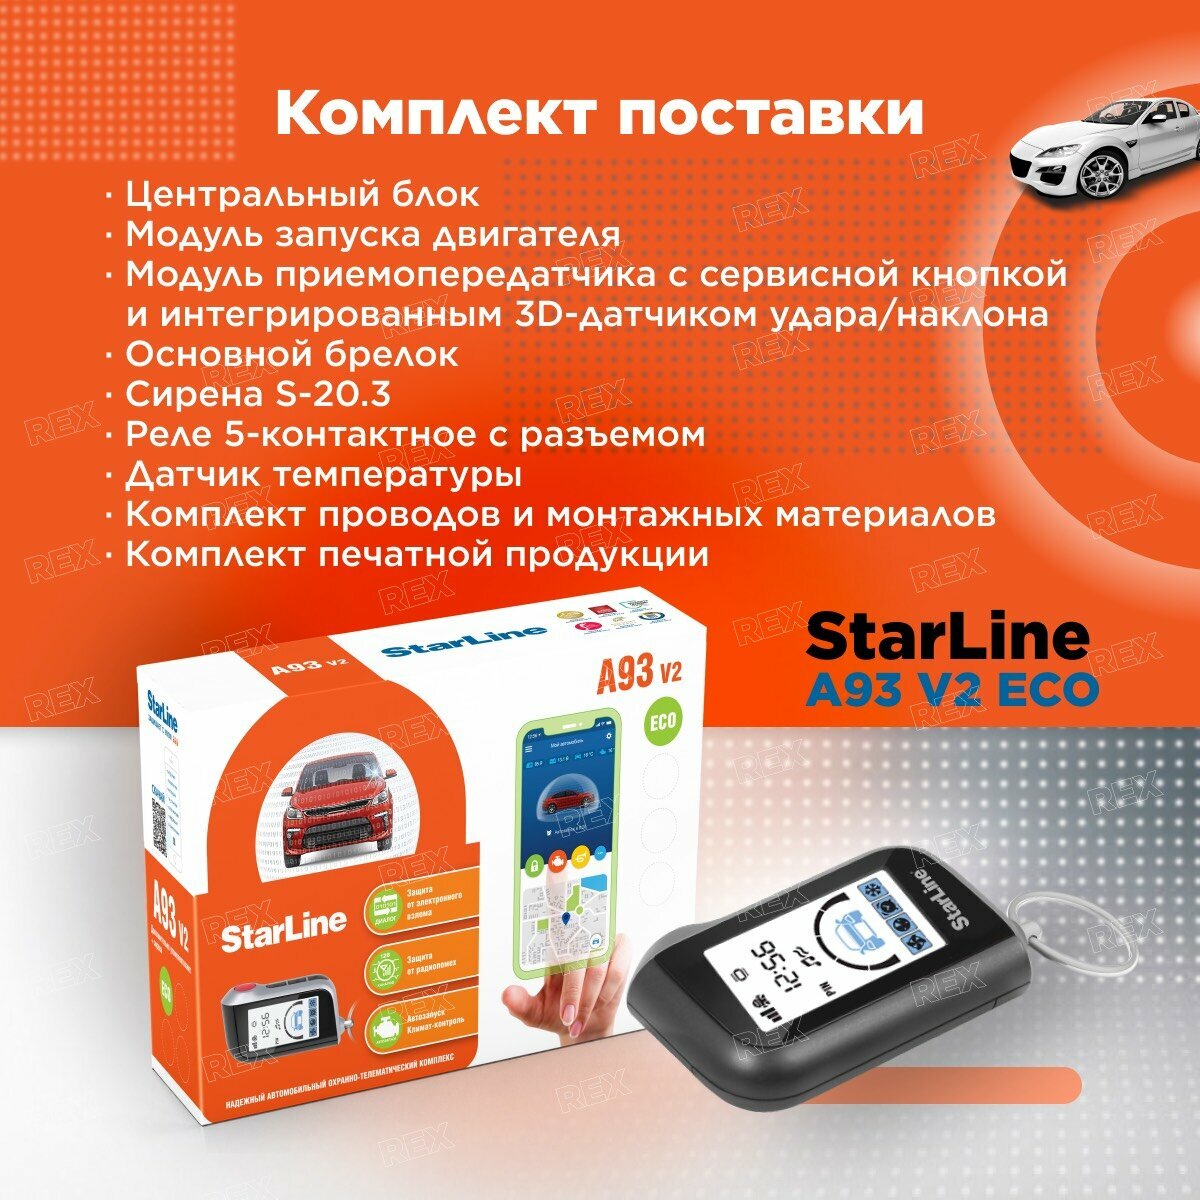 Автосигнализация с автозапуском StarLine A93 V2 ECO, 1 брелок